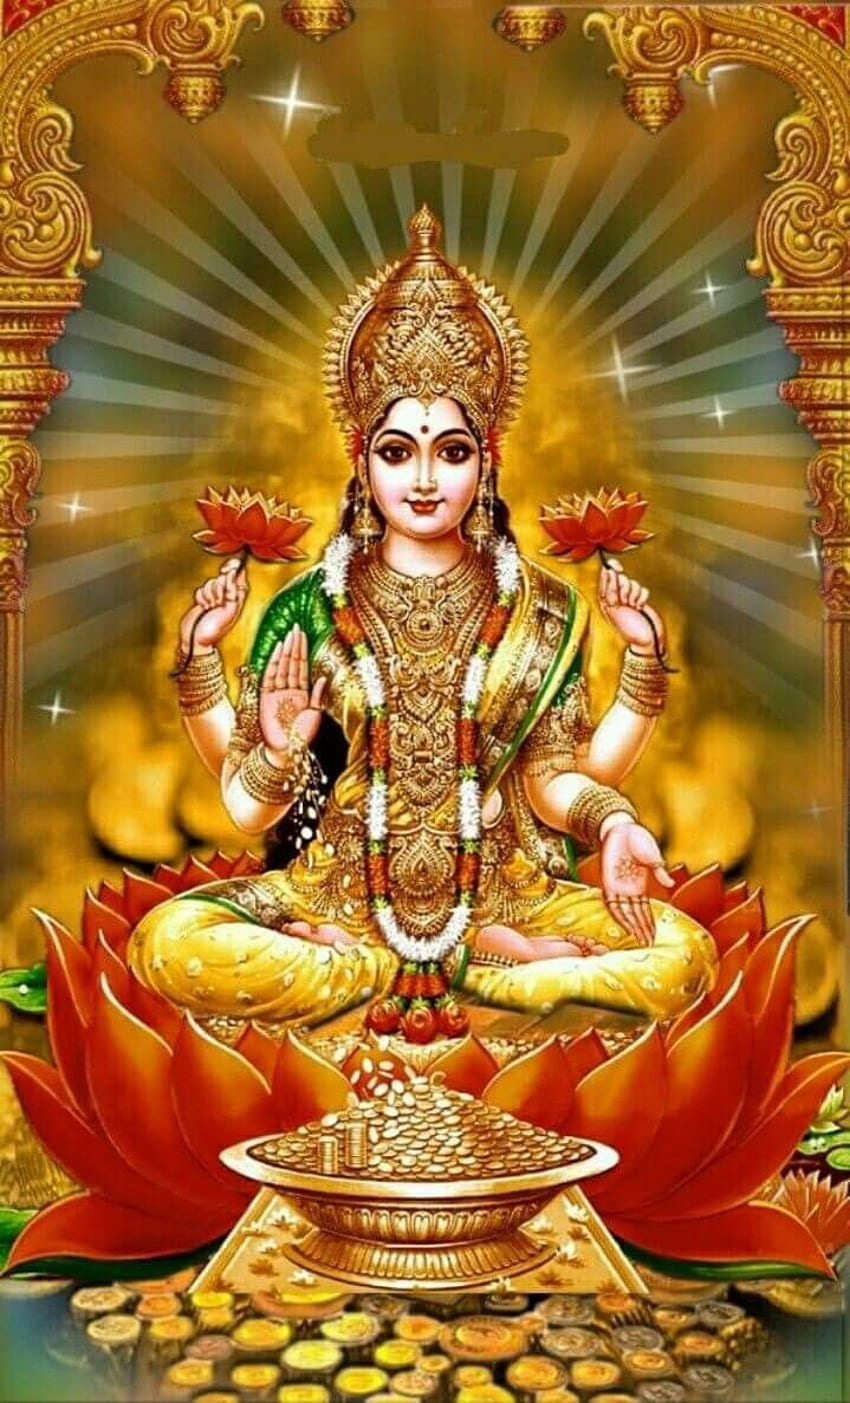 Que la déesse lakshmi vous bénisse avec Santé Paix Prospérité Et pour votre bien-être aussi, prenez ❤ ranji. Déesse Kali, Lakshmi, déesse Durga, Seigneur Lakshmi Fond d'écran de téléphone HD